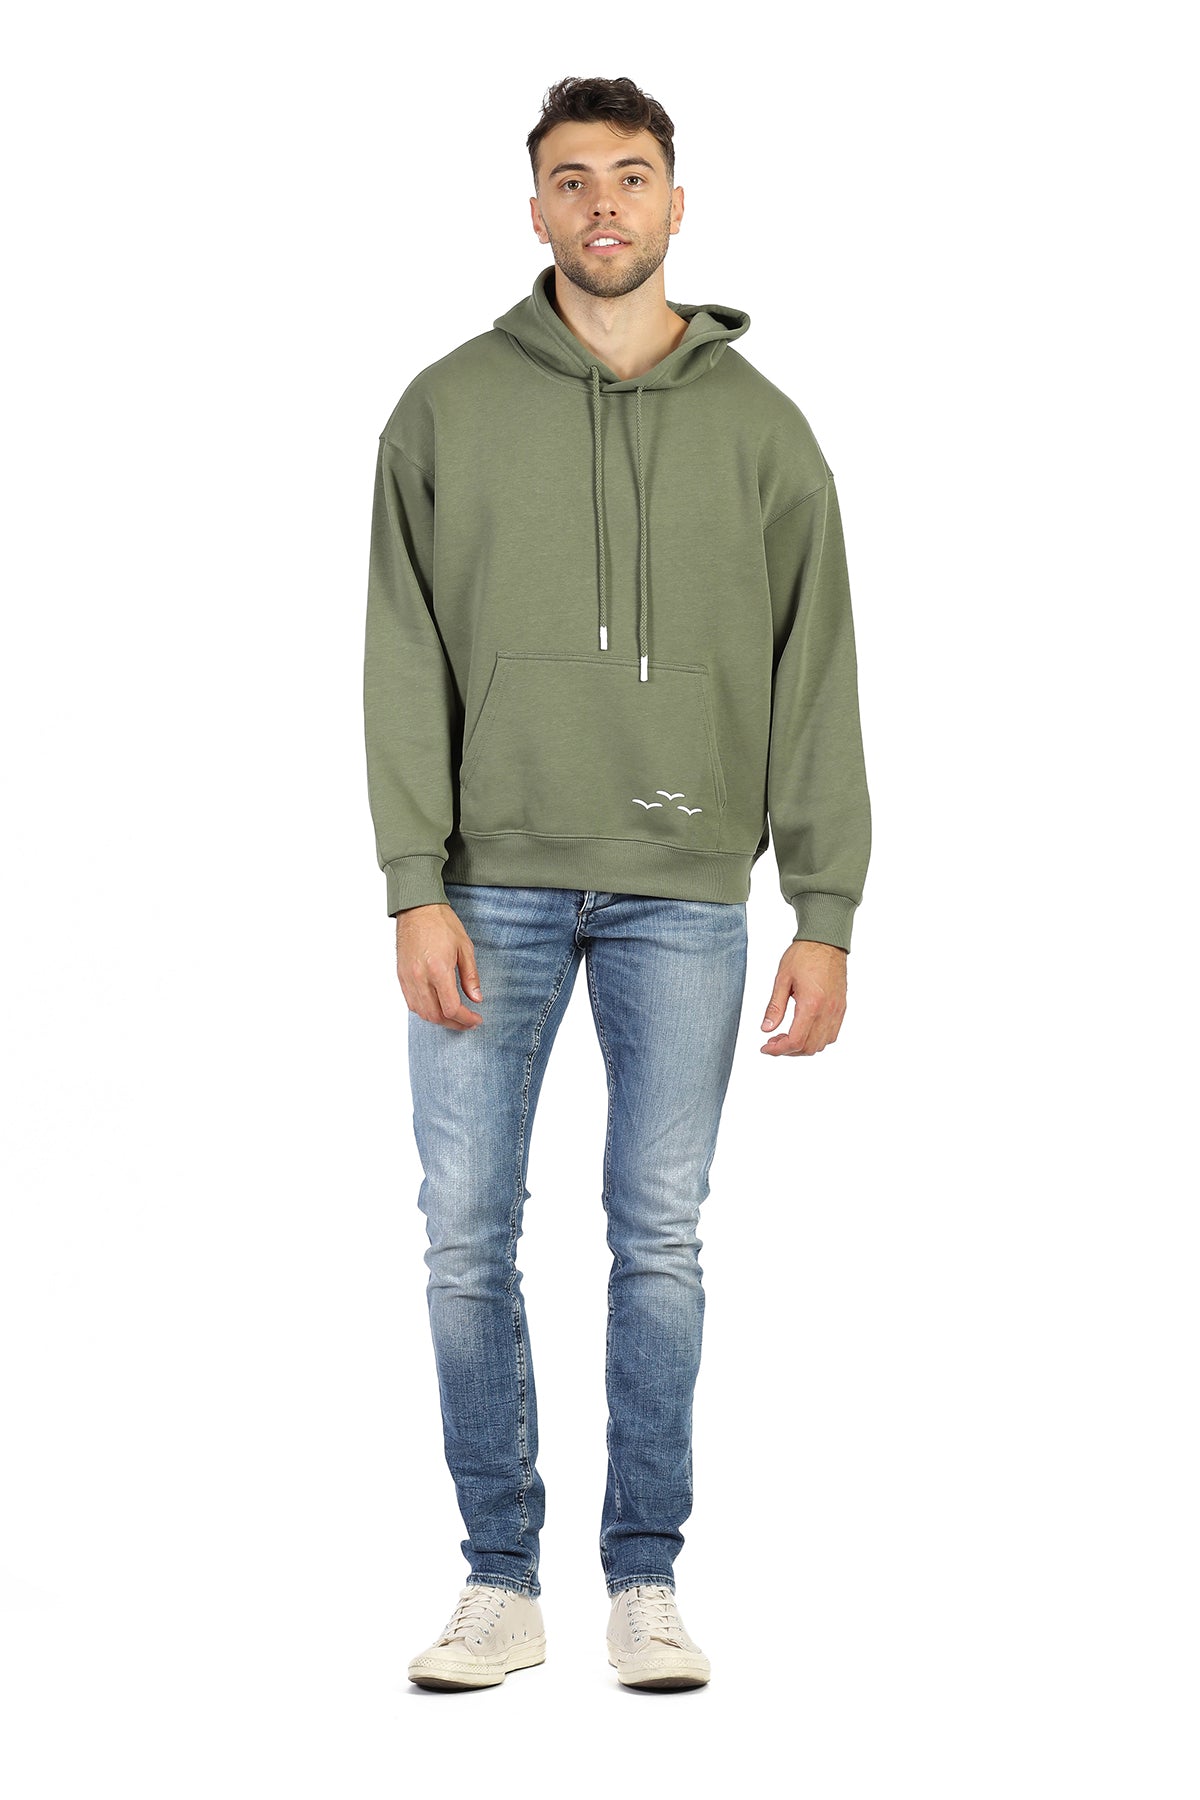 Men’s premium fleece relaxed hoodie in olive